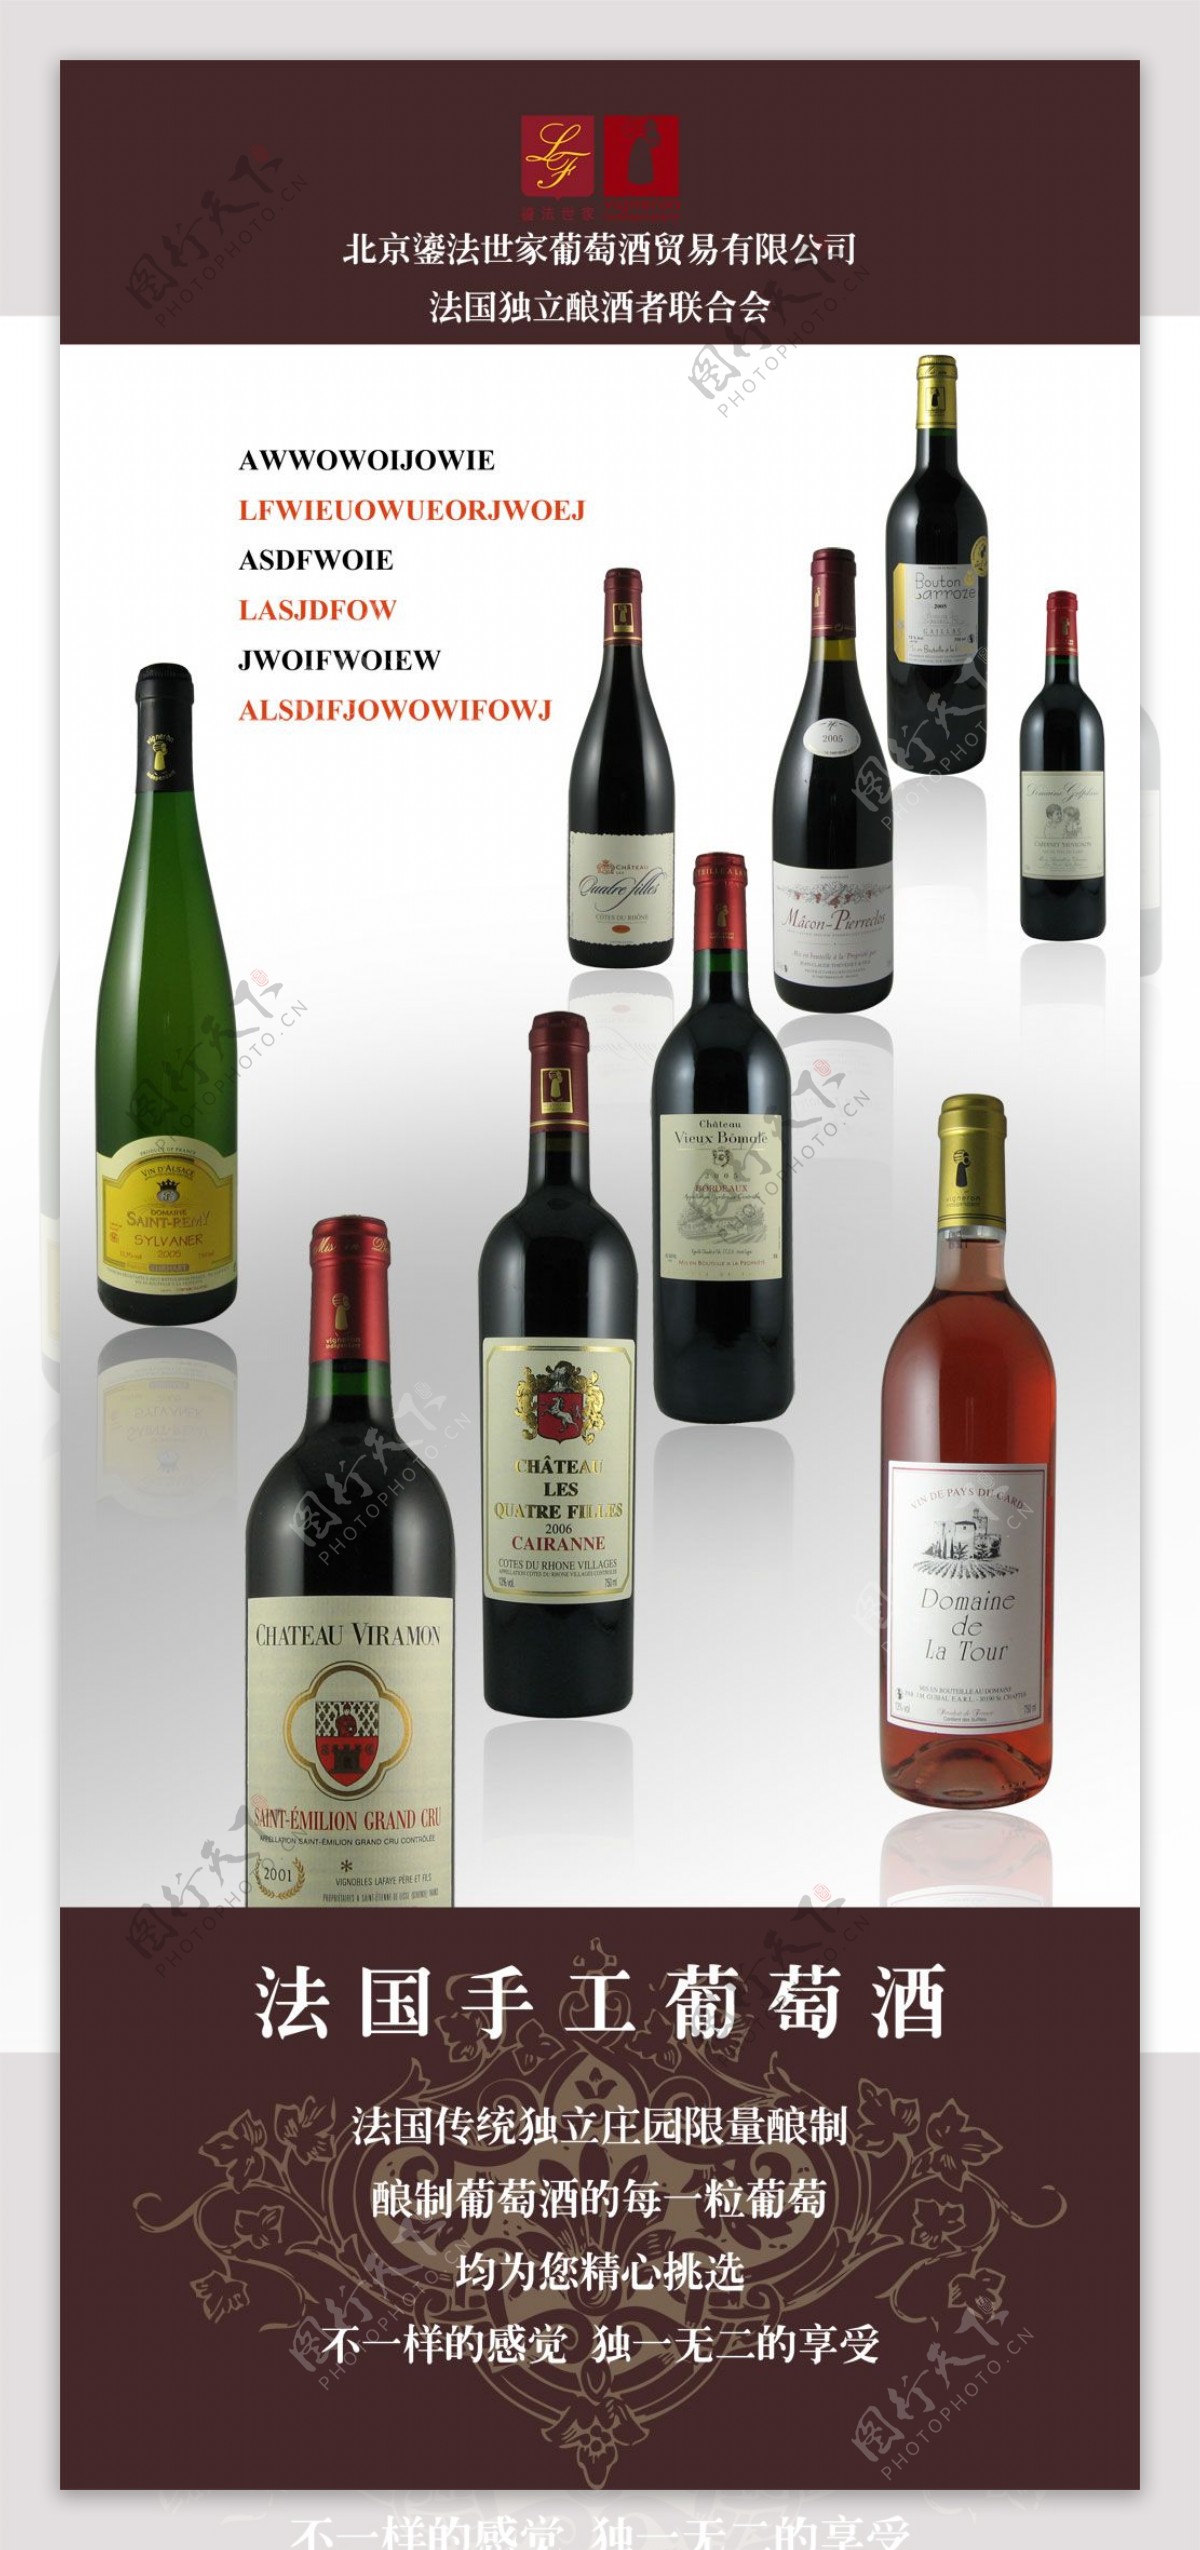 法国手工葡萄酒系列海报PSD